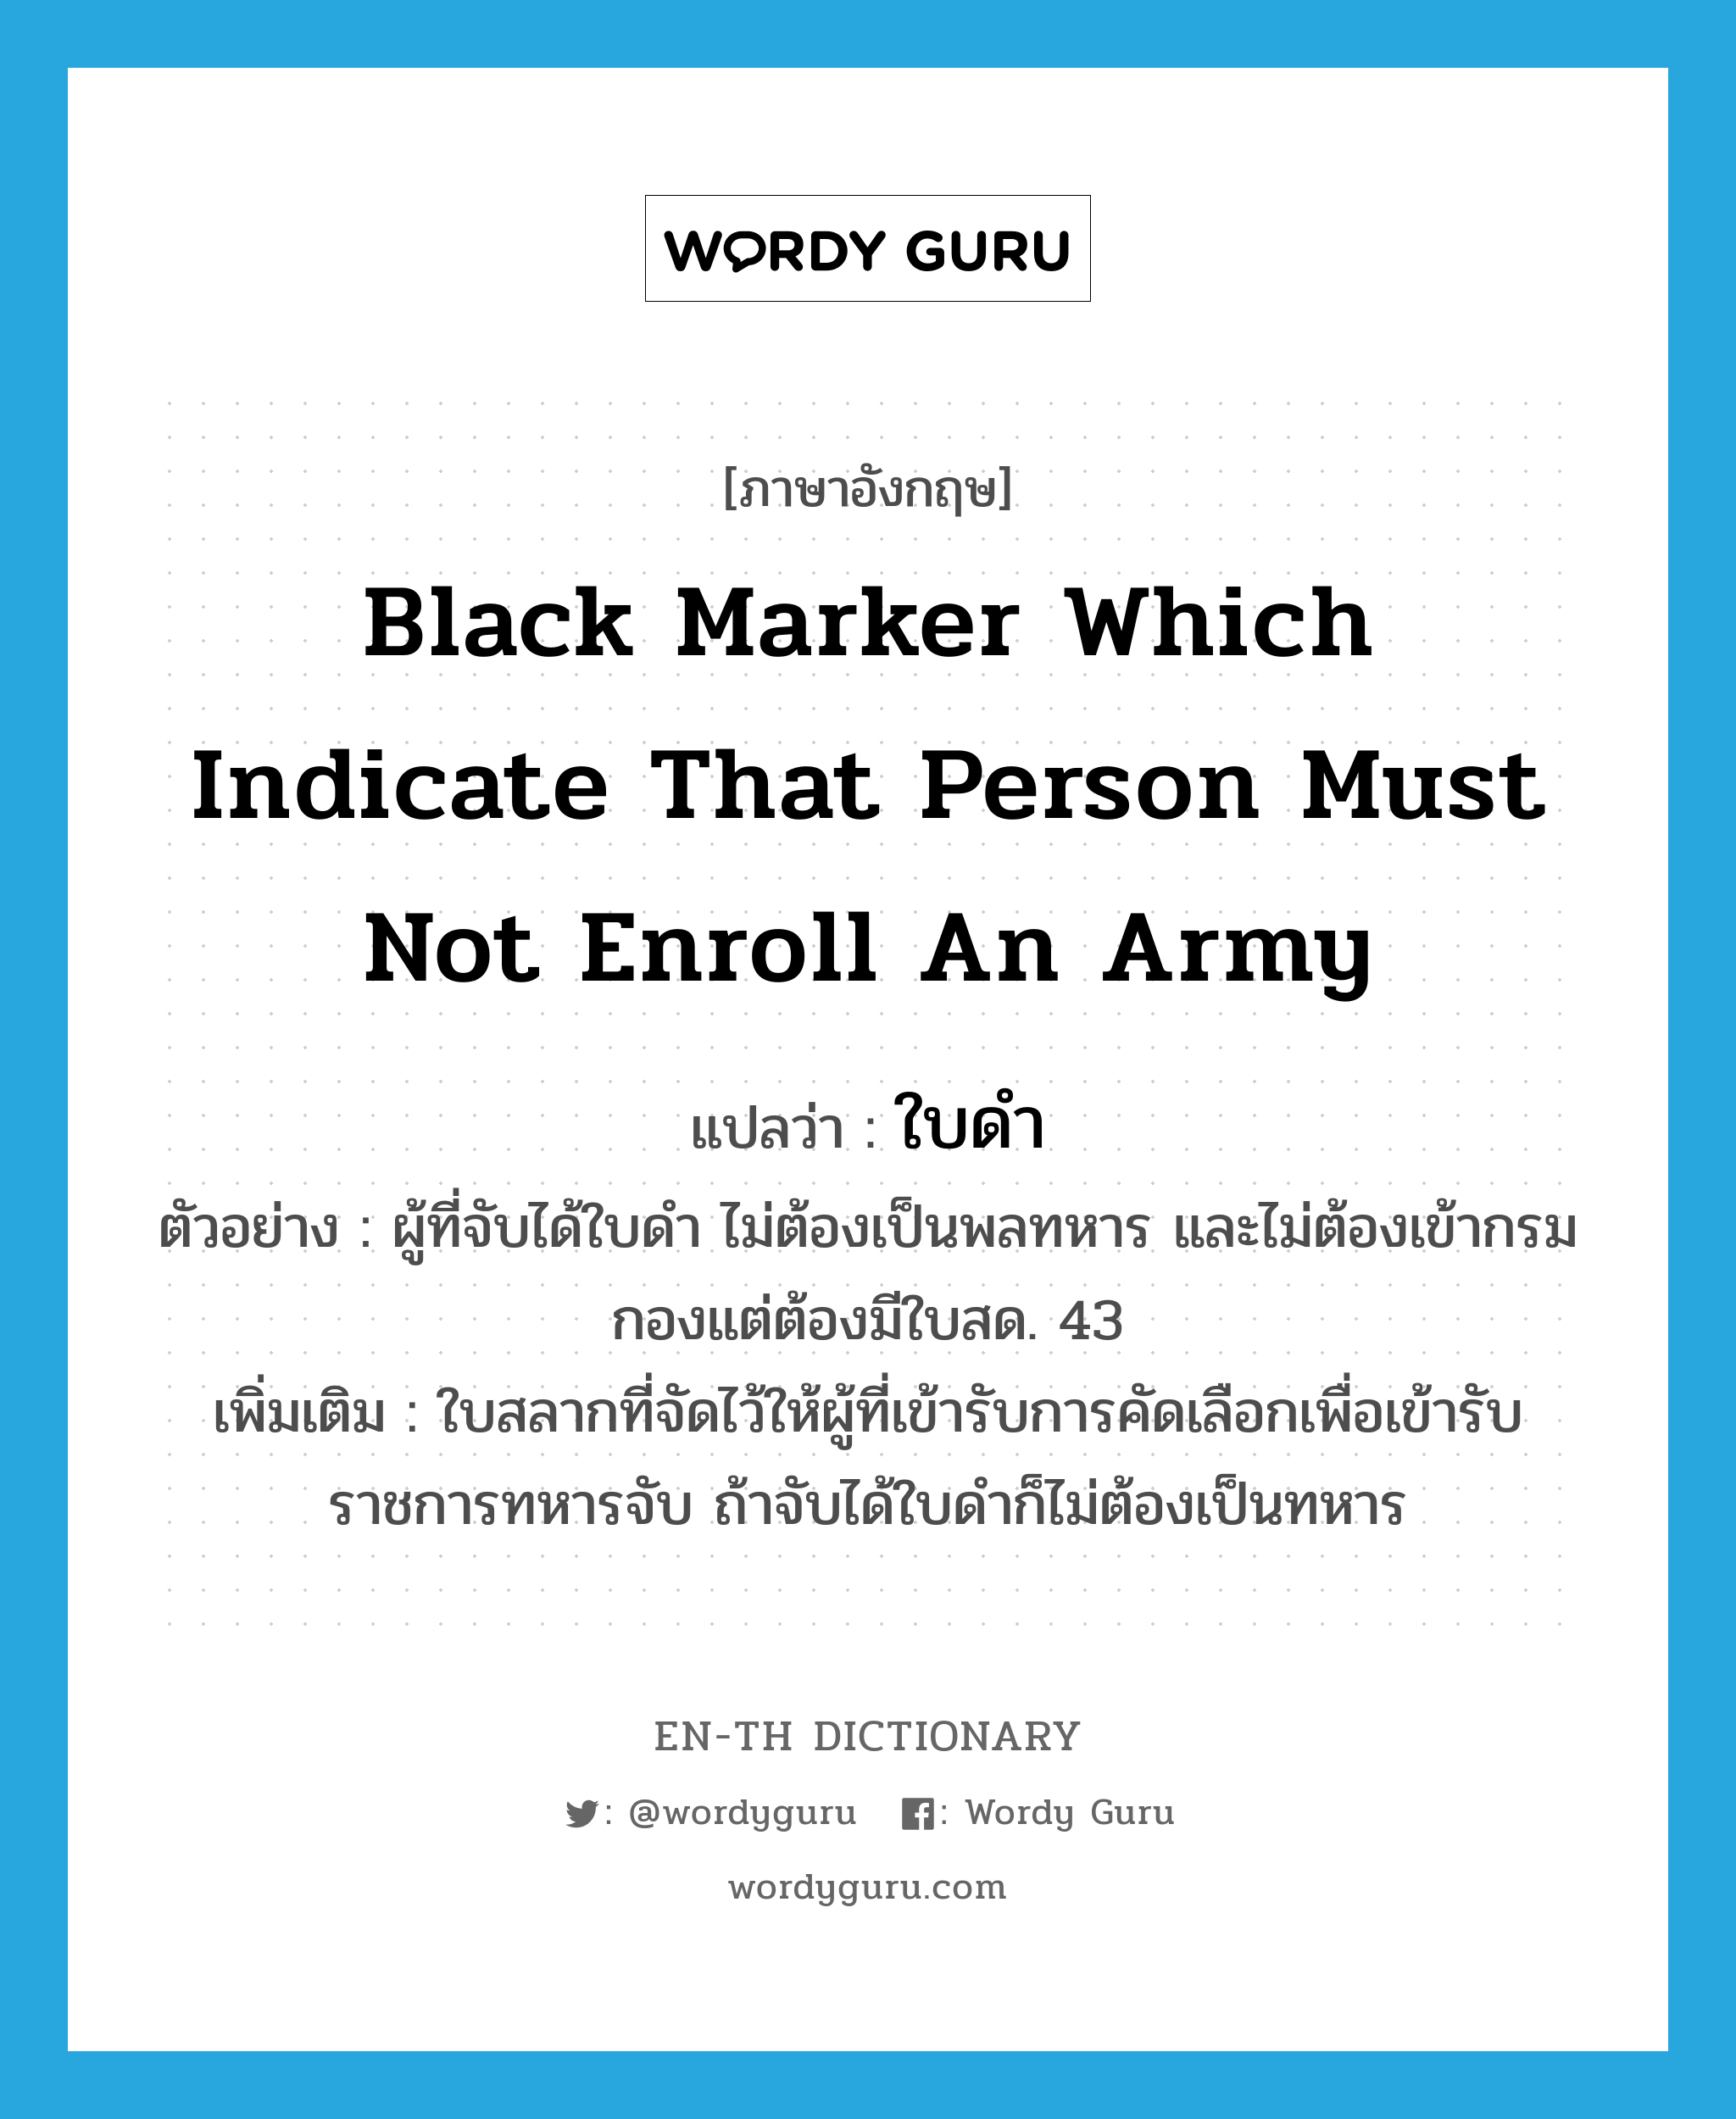 ใบดำ ภาษาอังกฤษ?, คำศัพท์ภาษาอังกฤษ ใบดำ แปลว่า black marker which indicate that person must not enroll an army ประเภท N ตัวอย่าง ผู้ที่จับได้ใบดำ ไม่ต้องเป็นพลทหาร และไม่ต้องเข้ากรมกองแต่ต้องมีใบสด. 43 เพิ่มเติม ใบสลากที่จัดไว้ให้ผู้ที่เข้ารับการคัดเลือกเพื่อเข้ารับราชการทหารจับ ถ้าจับได้ใบดำก็ไม่ต้องเป็นทหาร หมวด N